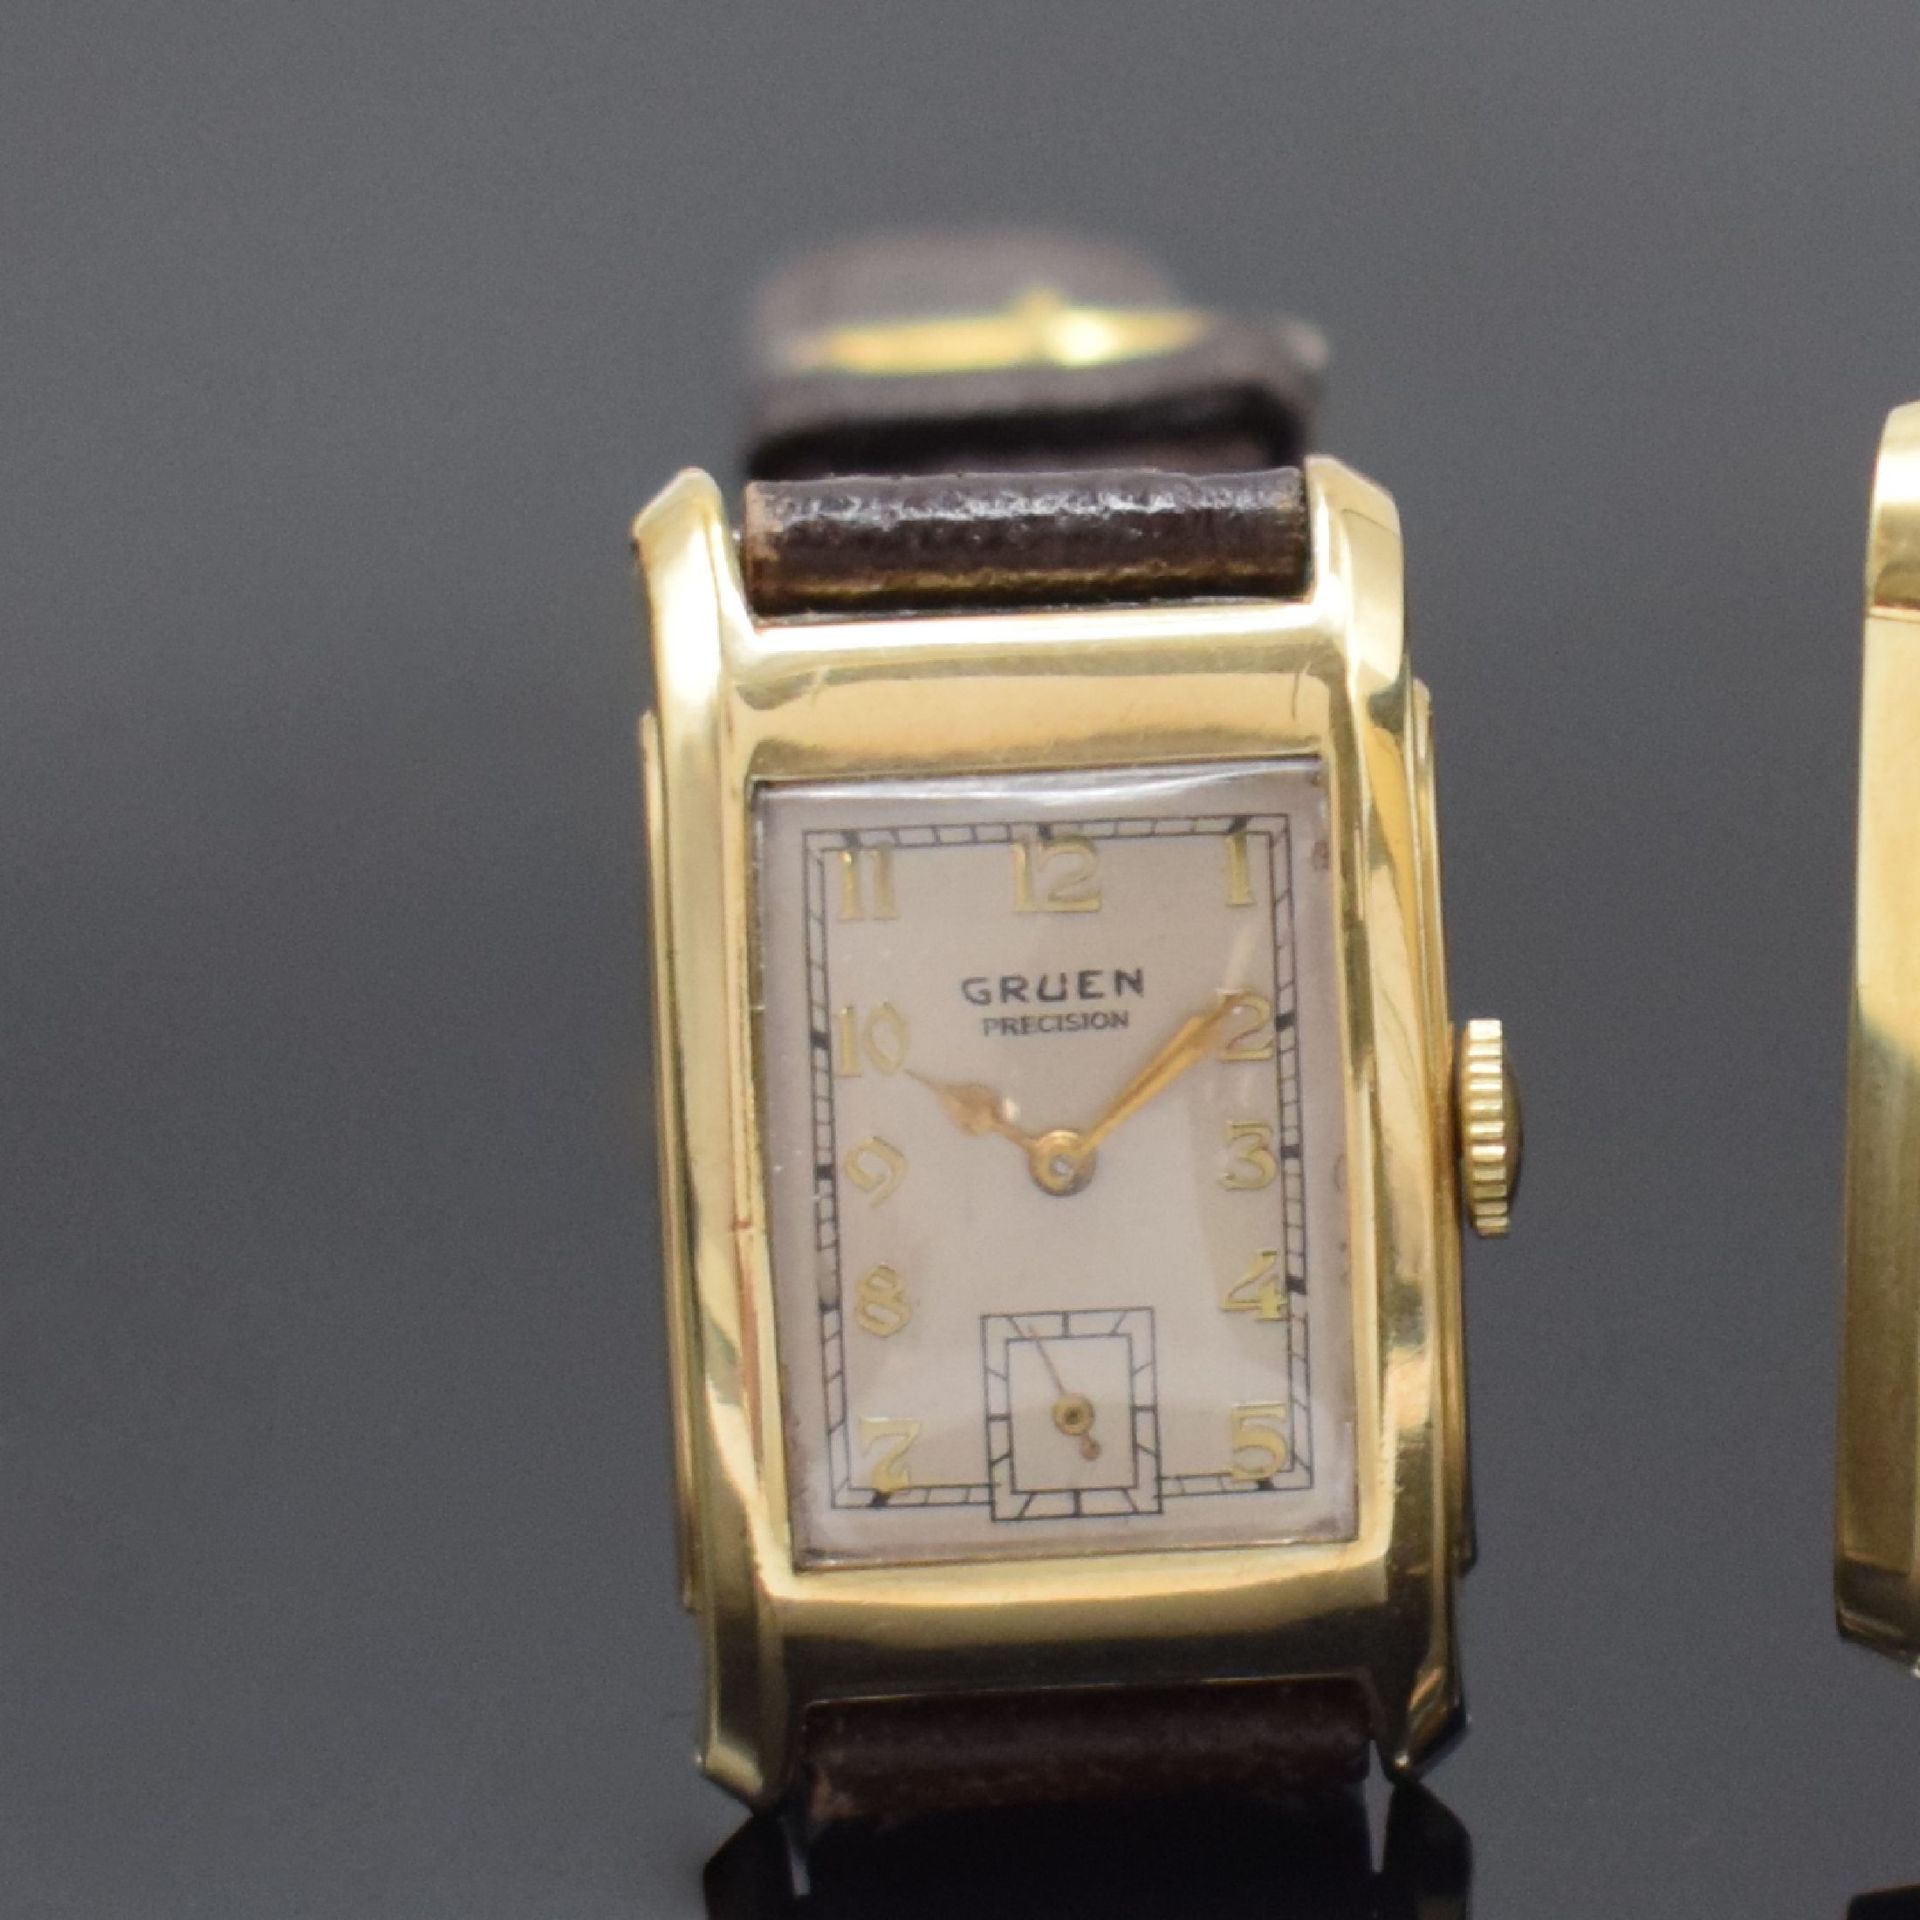 LONGINES / GRUEN 2 rechteckige goldfilled Armbanduhren, - Bild 3 aus 9